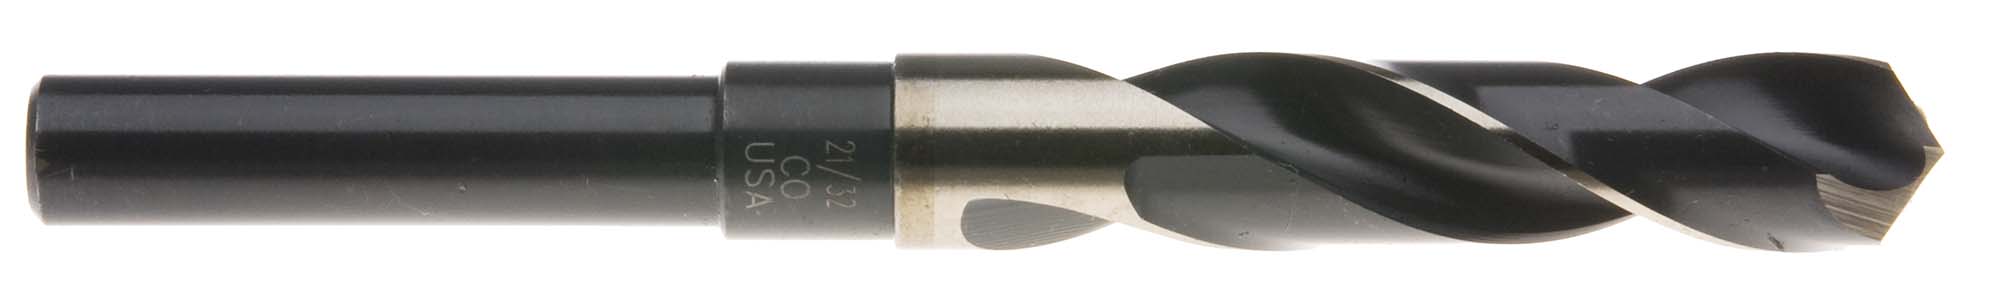 5/8" S and D Drill (1/2" shank) USA Cobalt